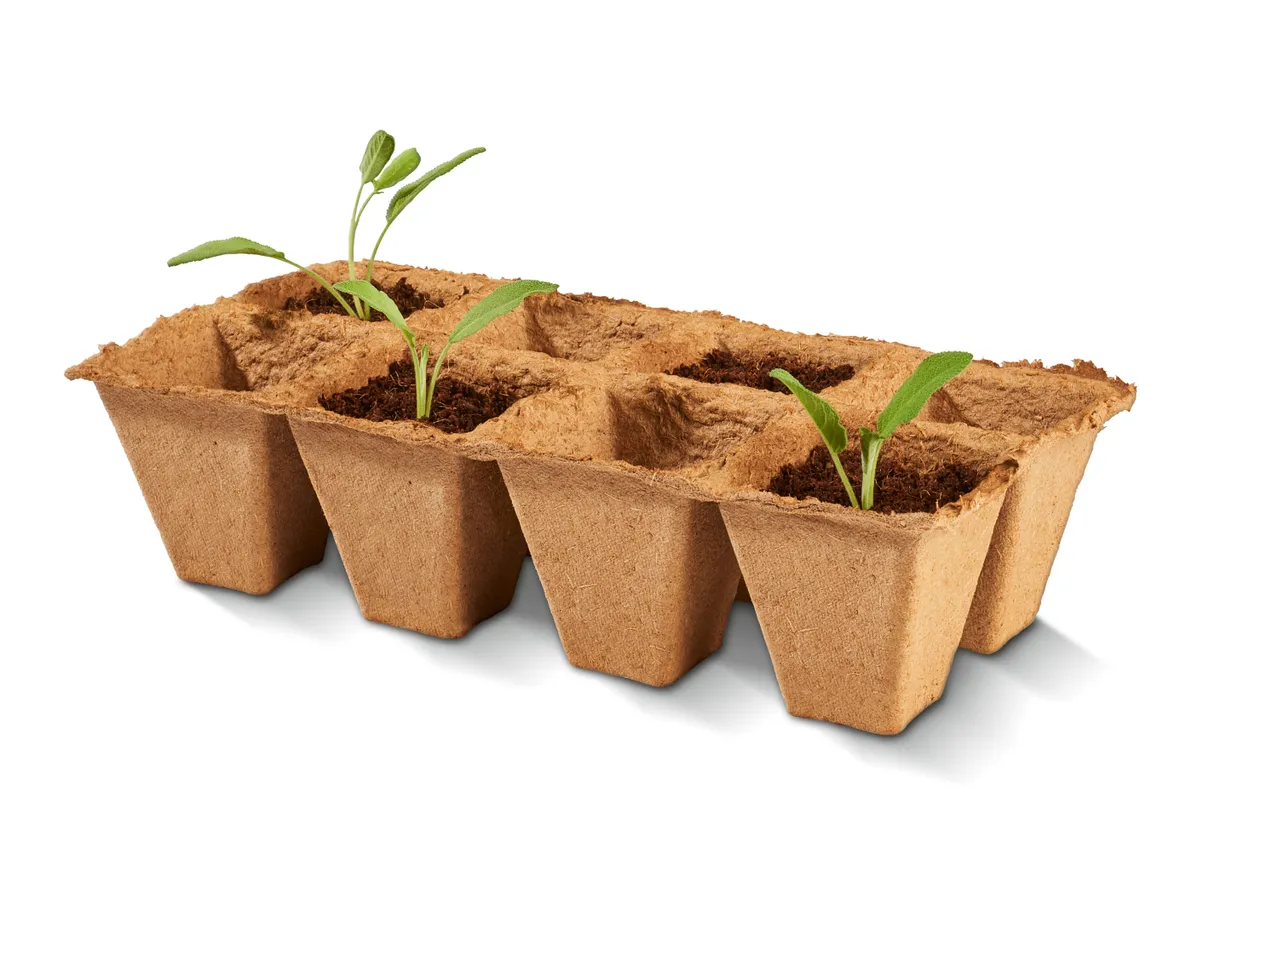 Vaso per coltivazione , prezzo 3.99 EUR 
Vaso per coltivazione 
- Biodegradabile
A ...